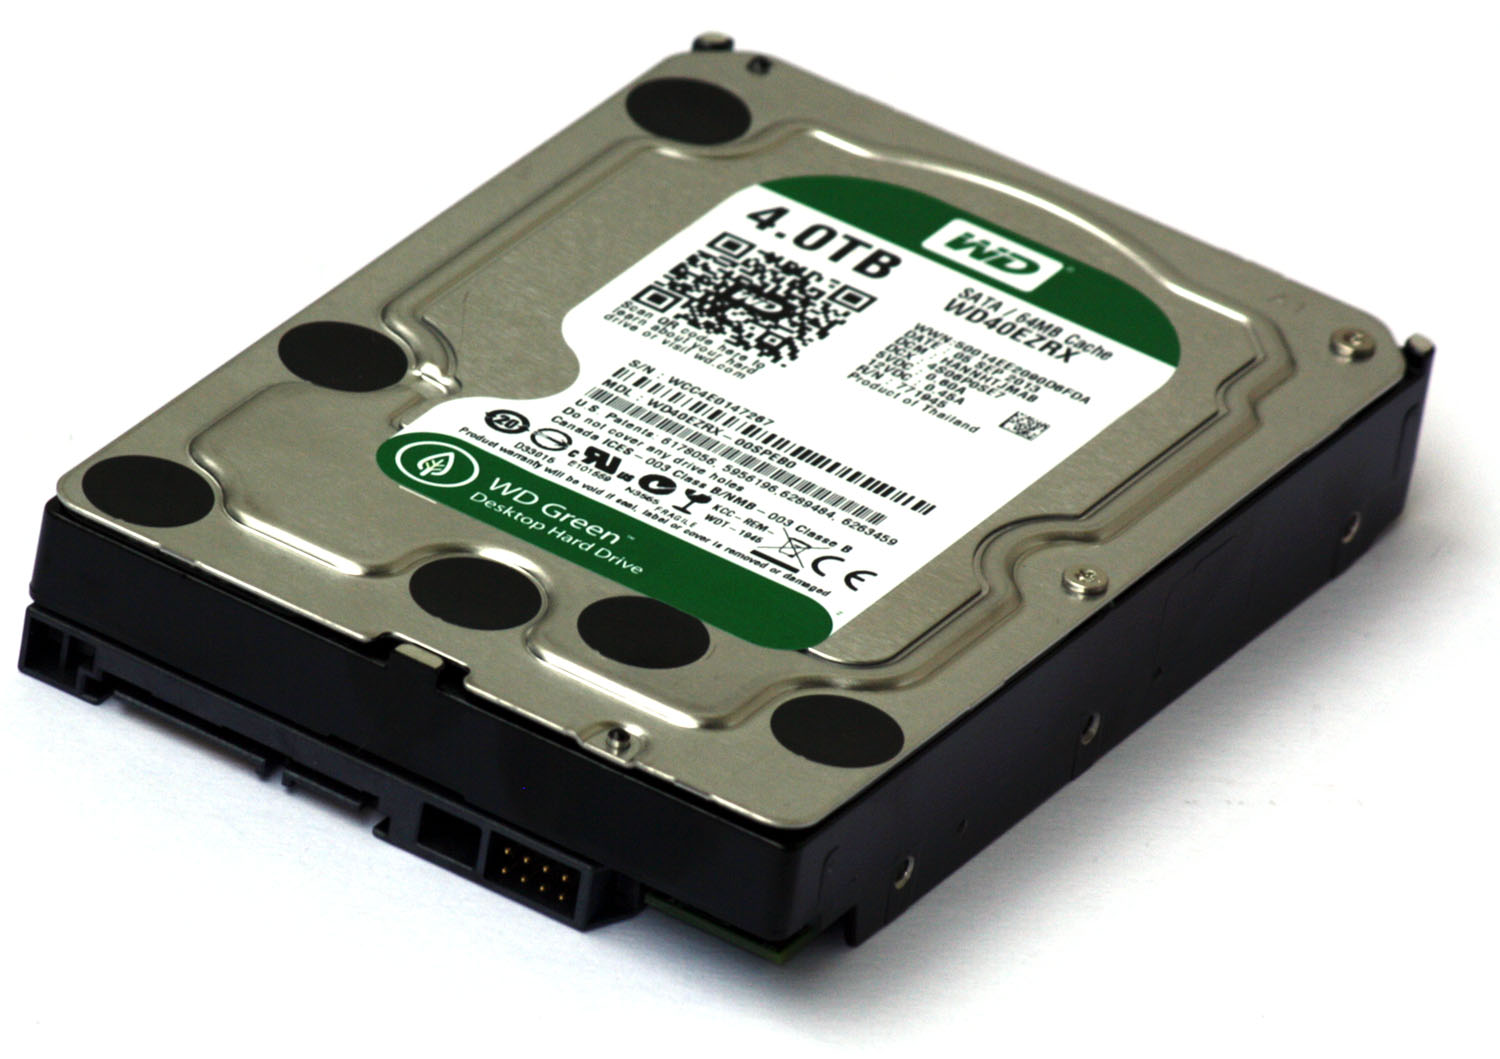 Srovnávací test šesti pevných disků s kapacitou 3–4 TB